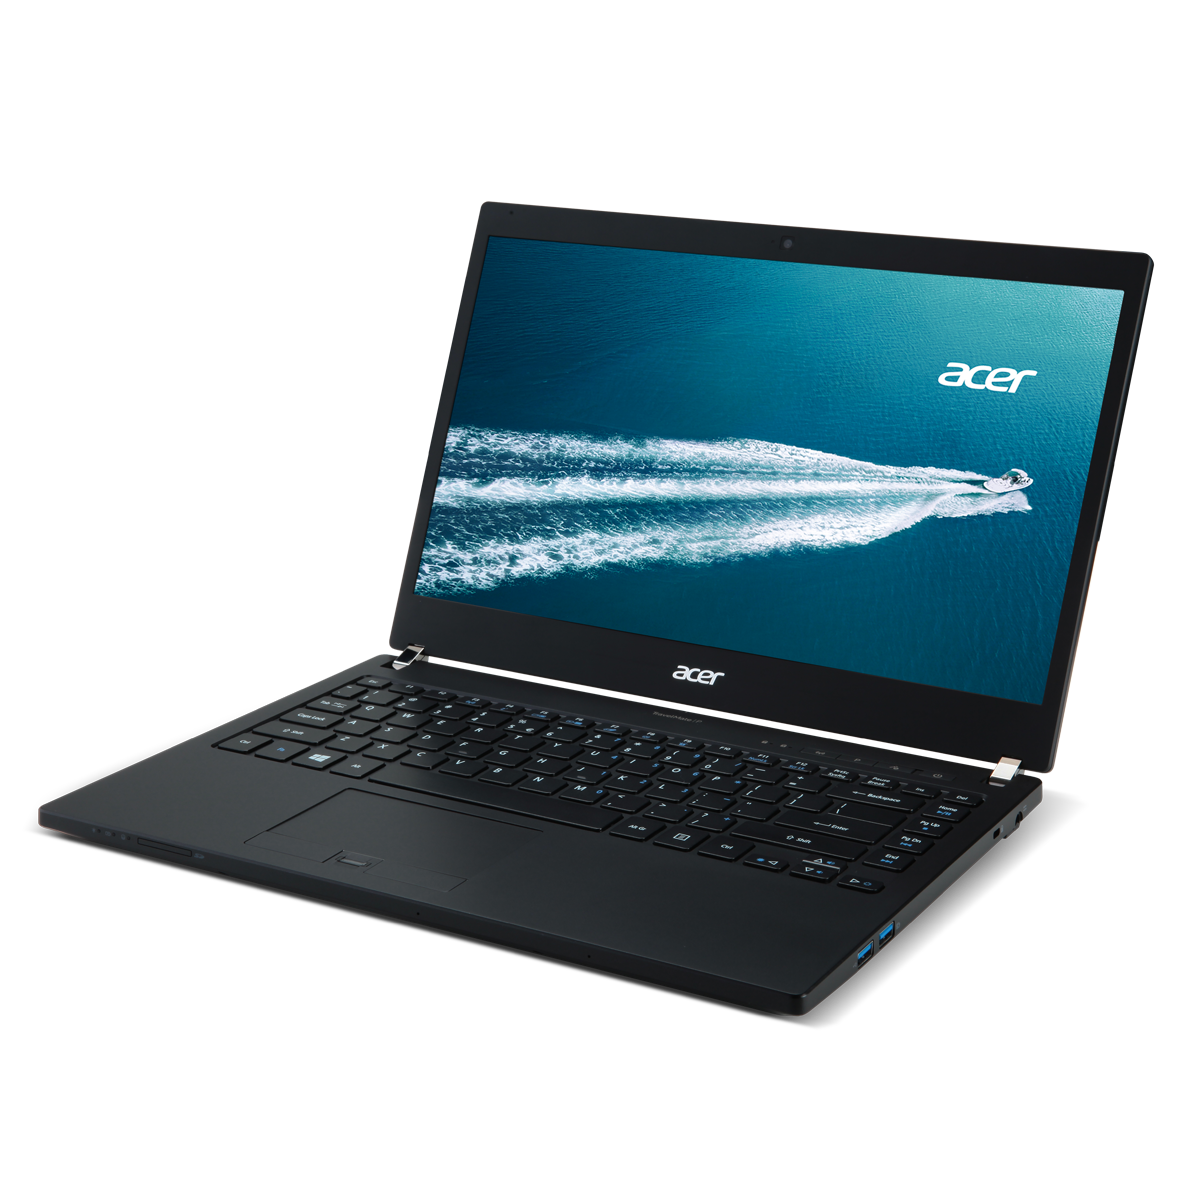 Acer TravelMate Laptop Repairs Australia